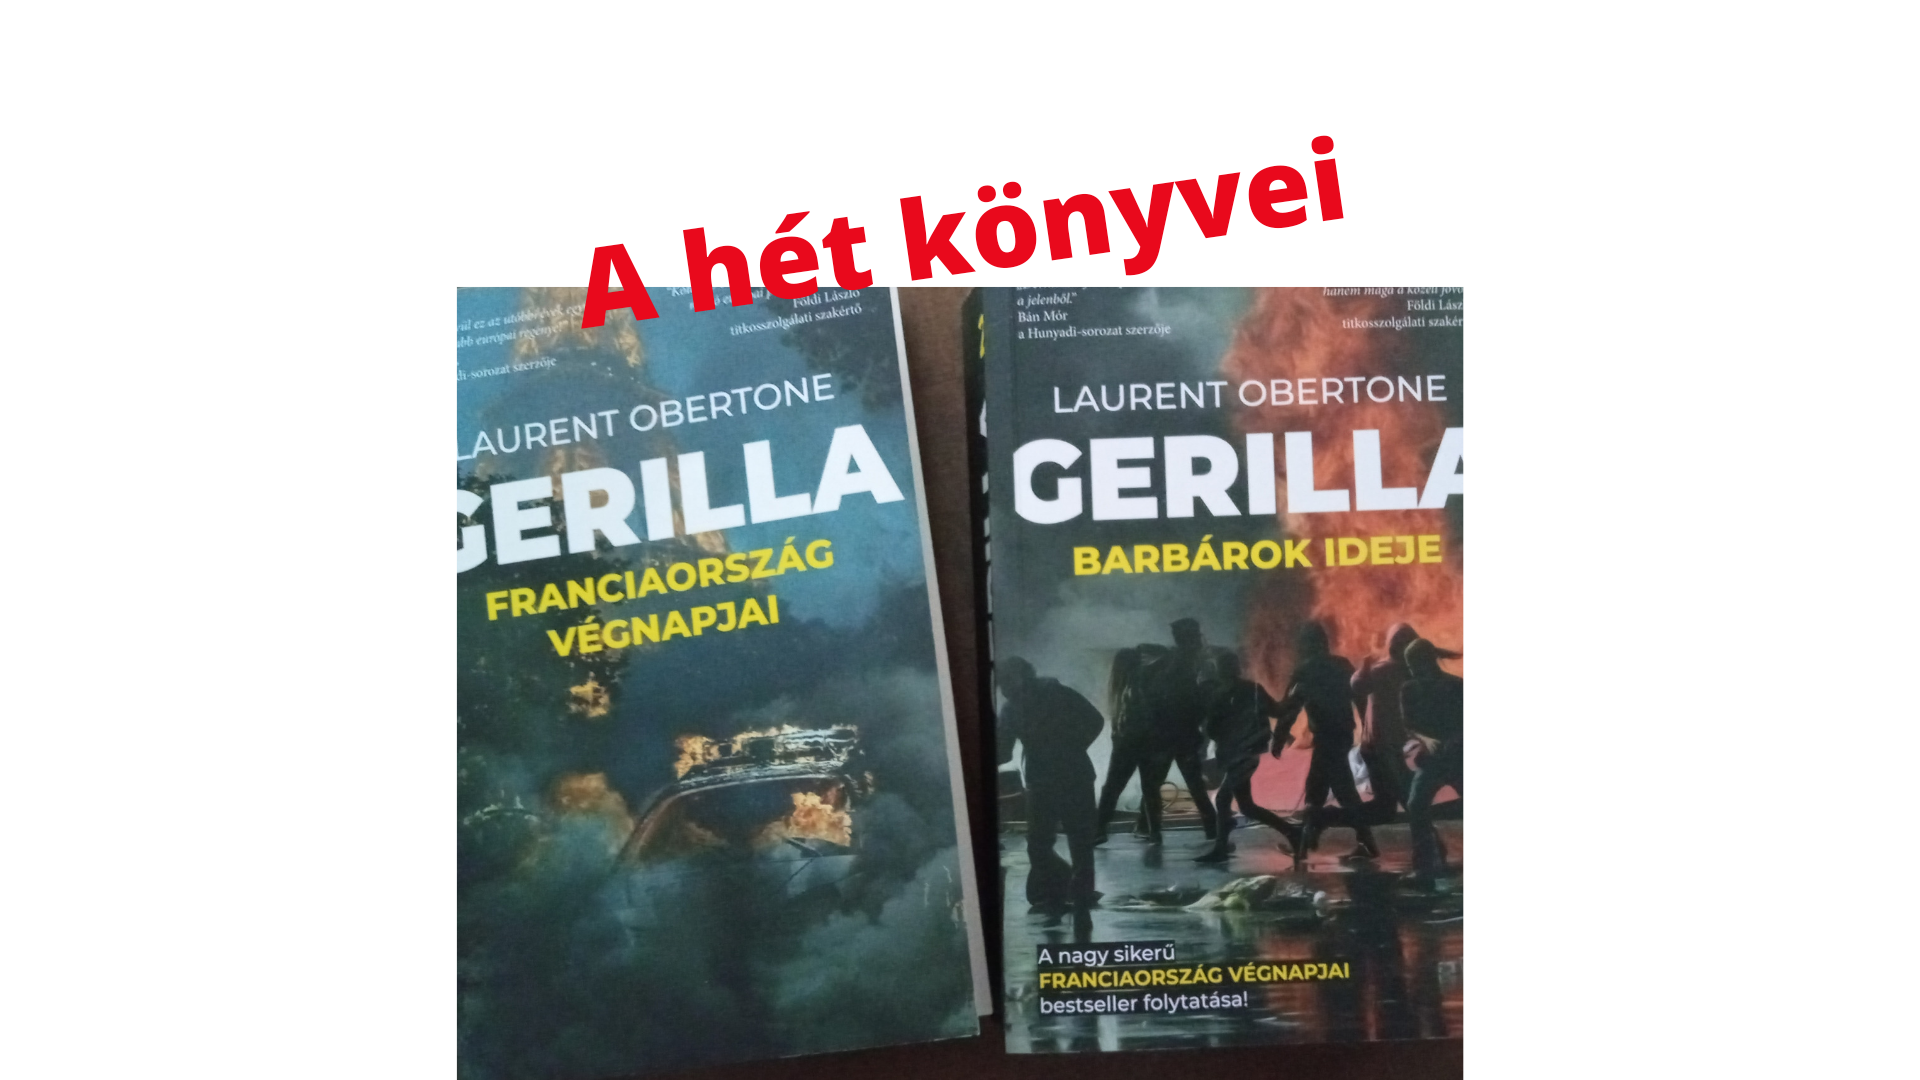 A hét könyvei: Laurent Obertone Gerilla 1-2.